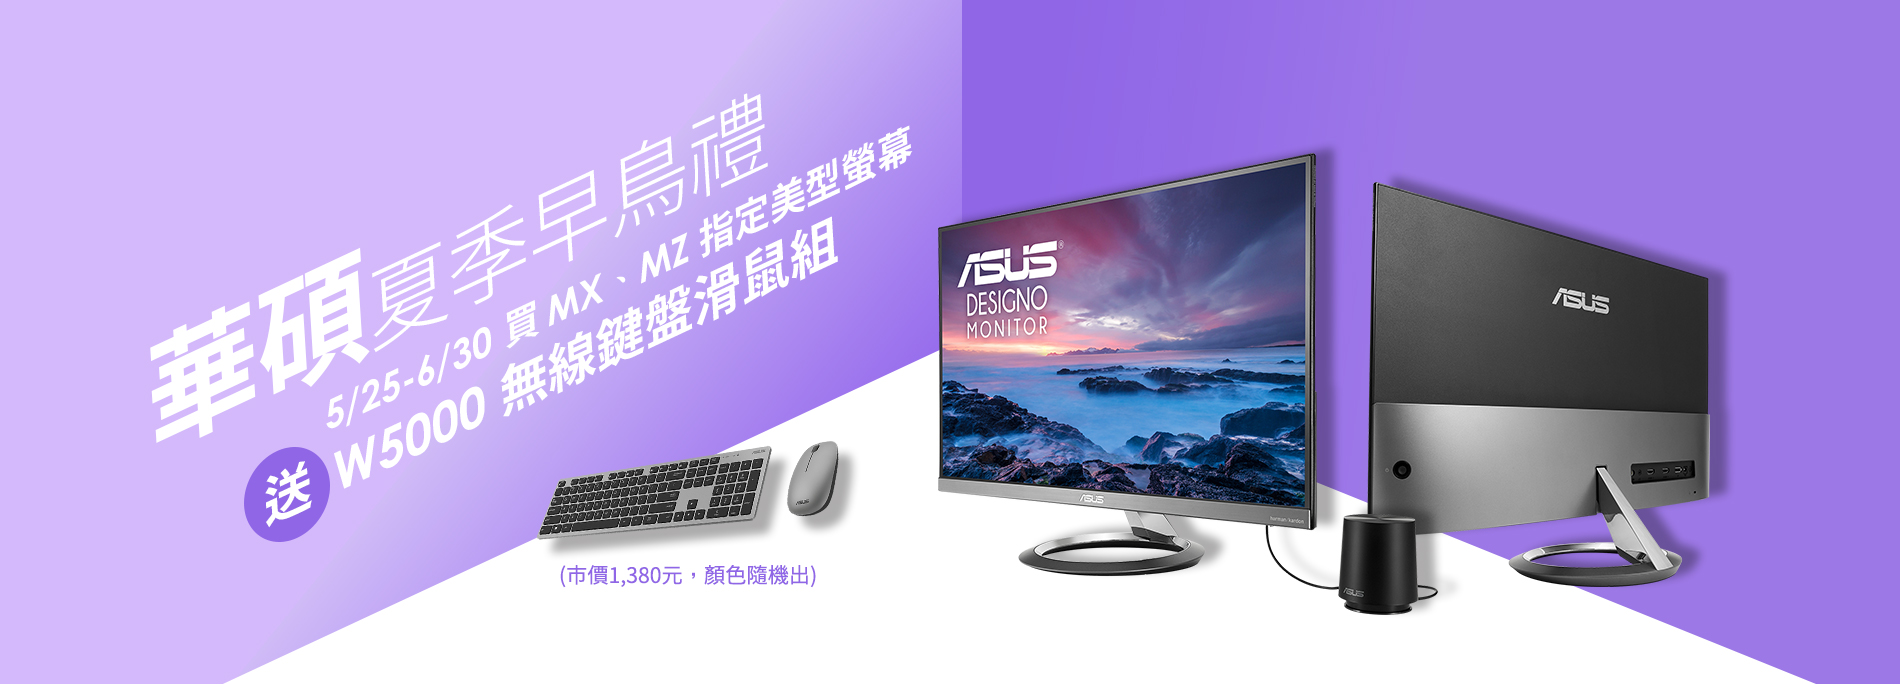 【夏日早鳥禮】買華碩MX、MZ系列螢幕指定型號 登錄送鍵盤滑鼠組